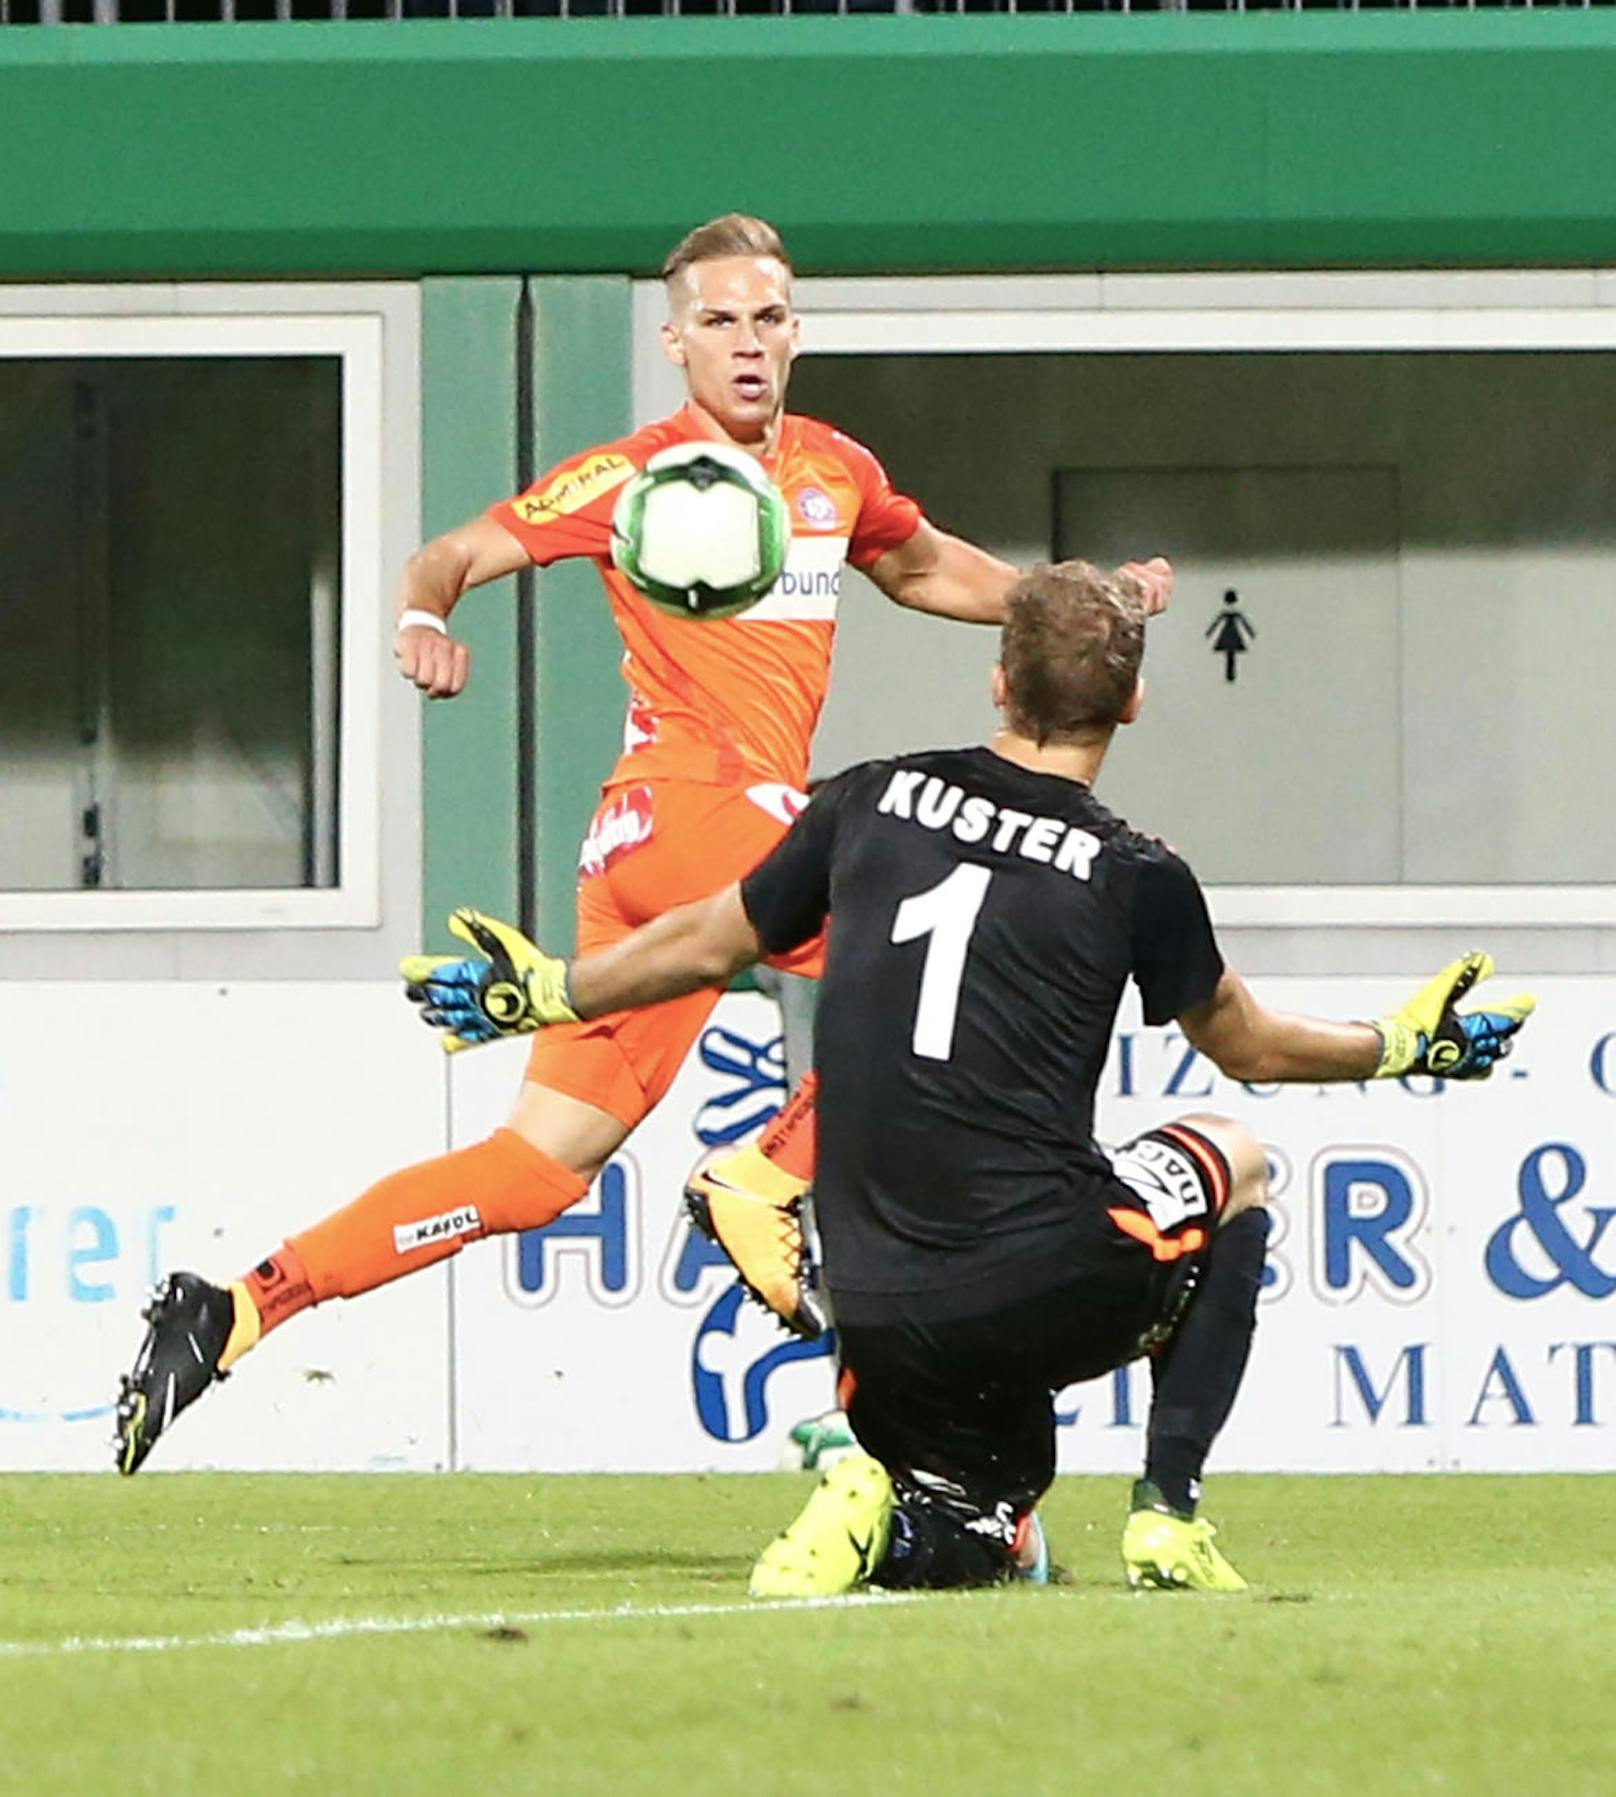 Zehn Minuten Einsatzzeit reichten Christoph Monschein, um sich ins "Team der Runde" zu spielen. Der Super-Joker der Austria traf gegen Mattersburg doppelt.